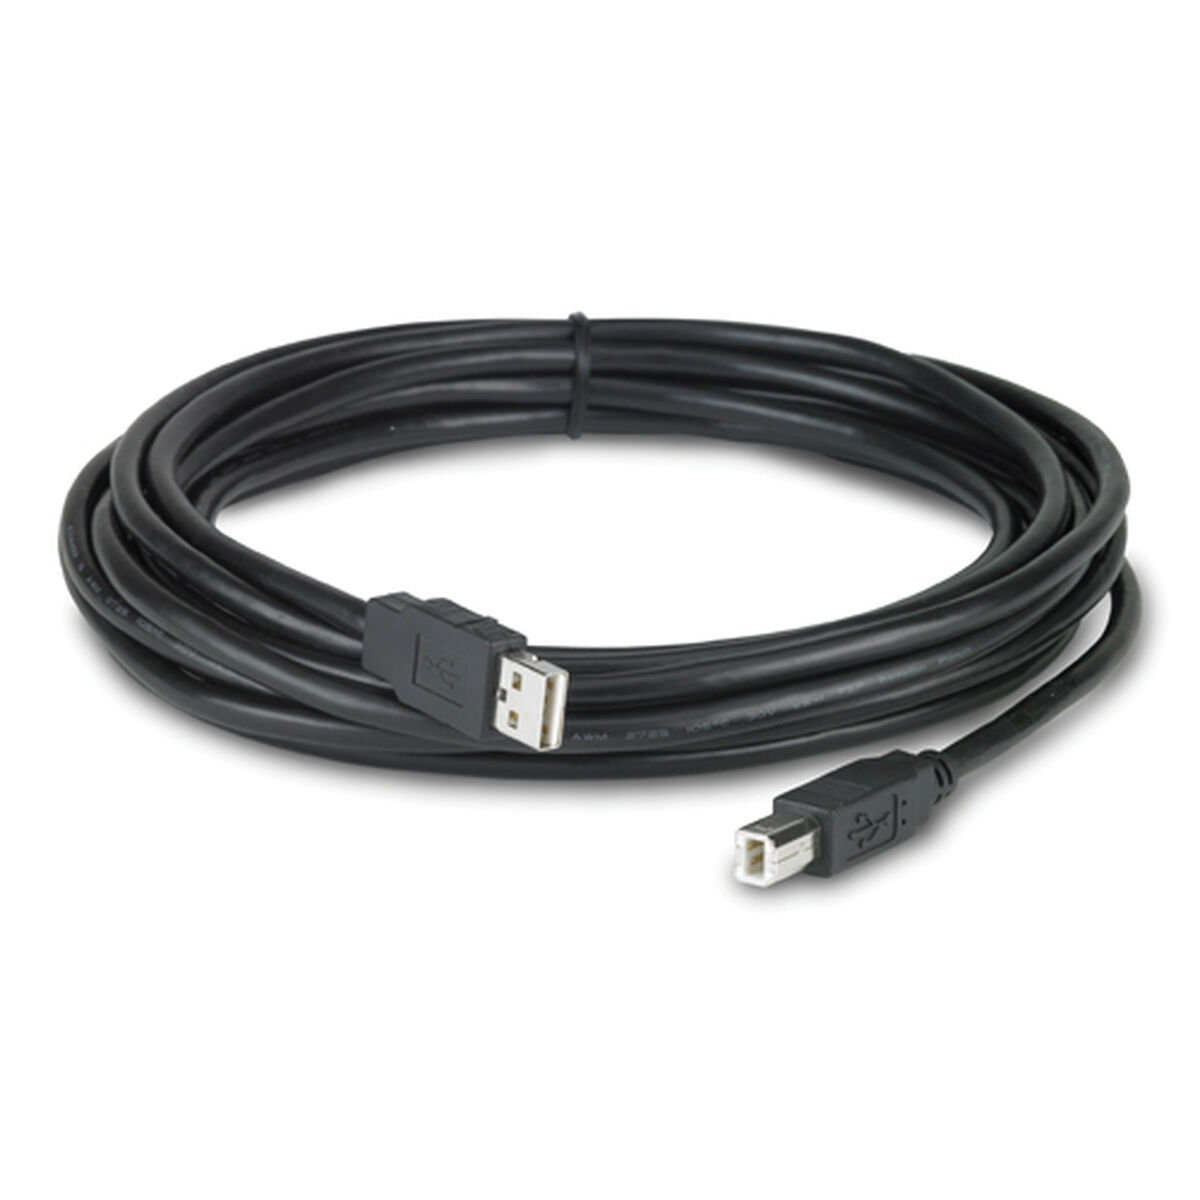 Osta tuote USB-Kaapeli APC NBAC0214L Musta 5 m verkkokaupastamme Korhone: Urheilu & Vapaa-aika 10% alennuksella koodilla KORHONE